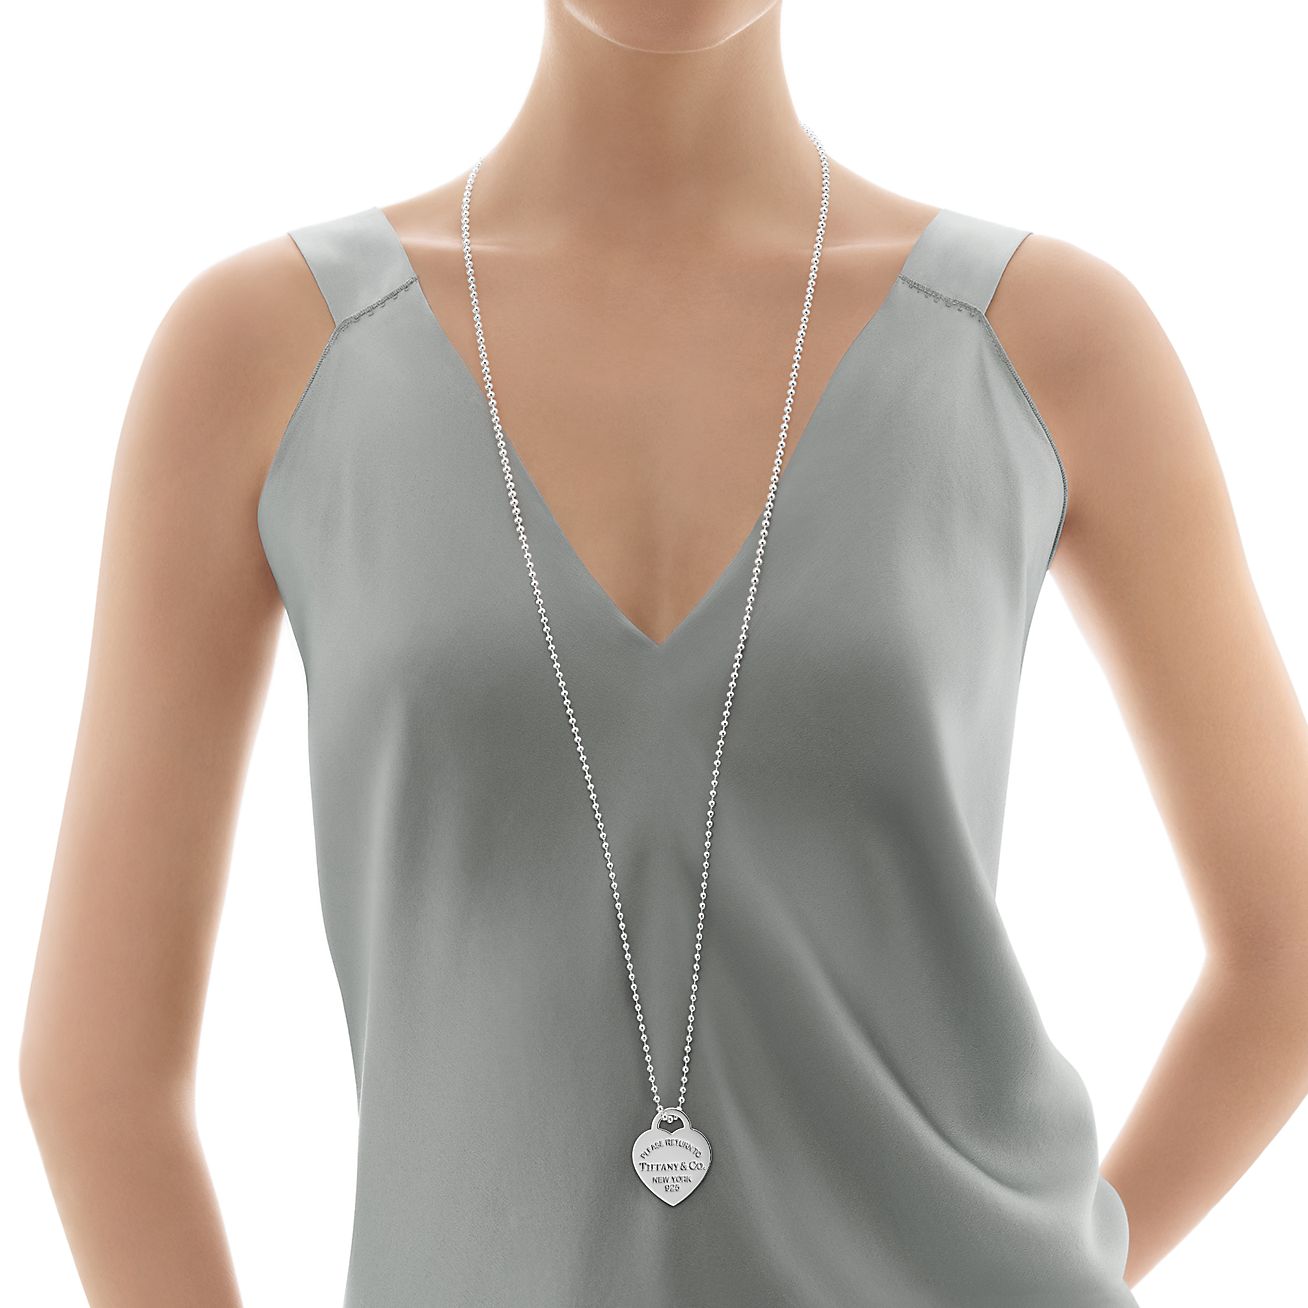 tiffany heart tag charm necklace